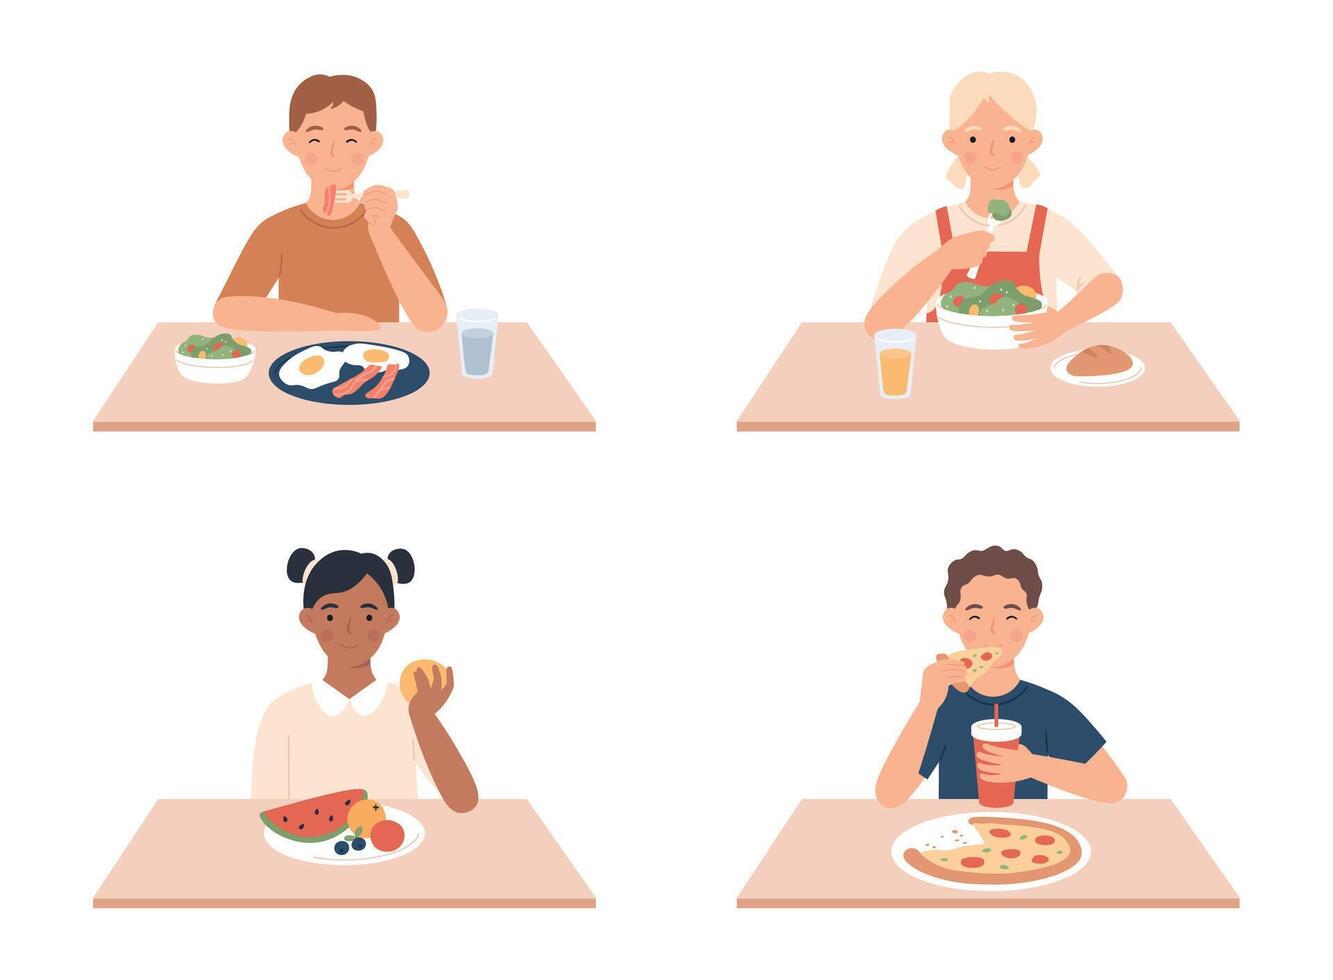 kinderen aan het eten. jongens en meisjes zittend Bij tafel en hebben ontbijt. gelukkig weinig vrouw en mannetje tekens aan het eten verschillend voedsel vector